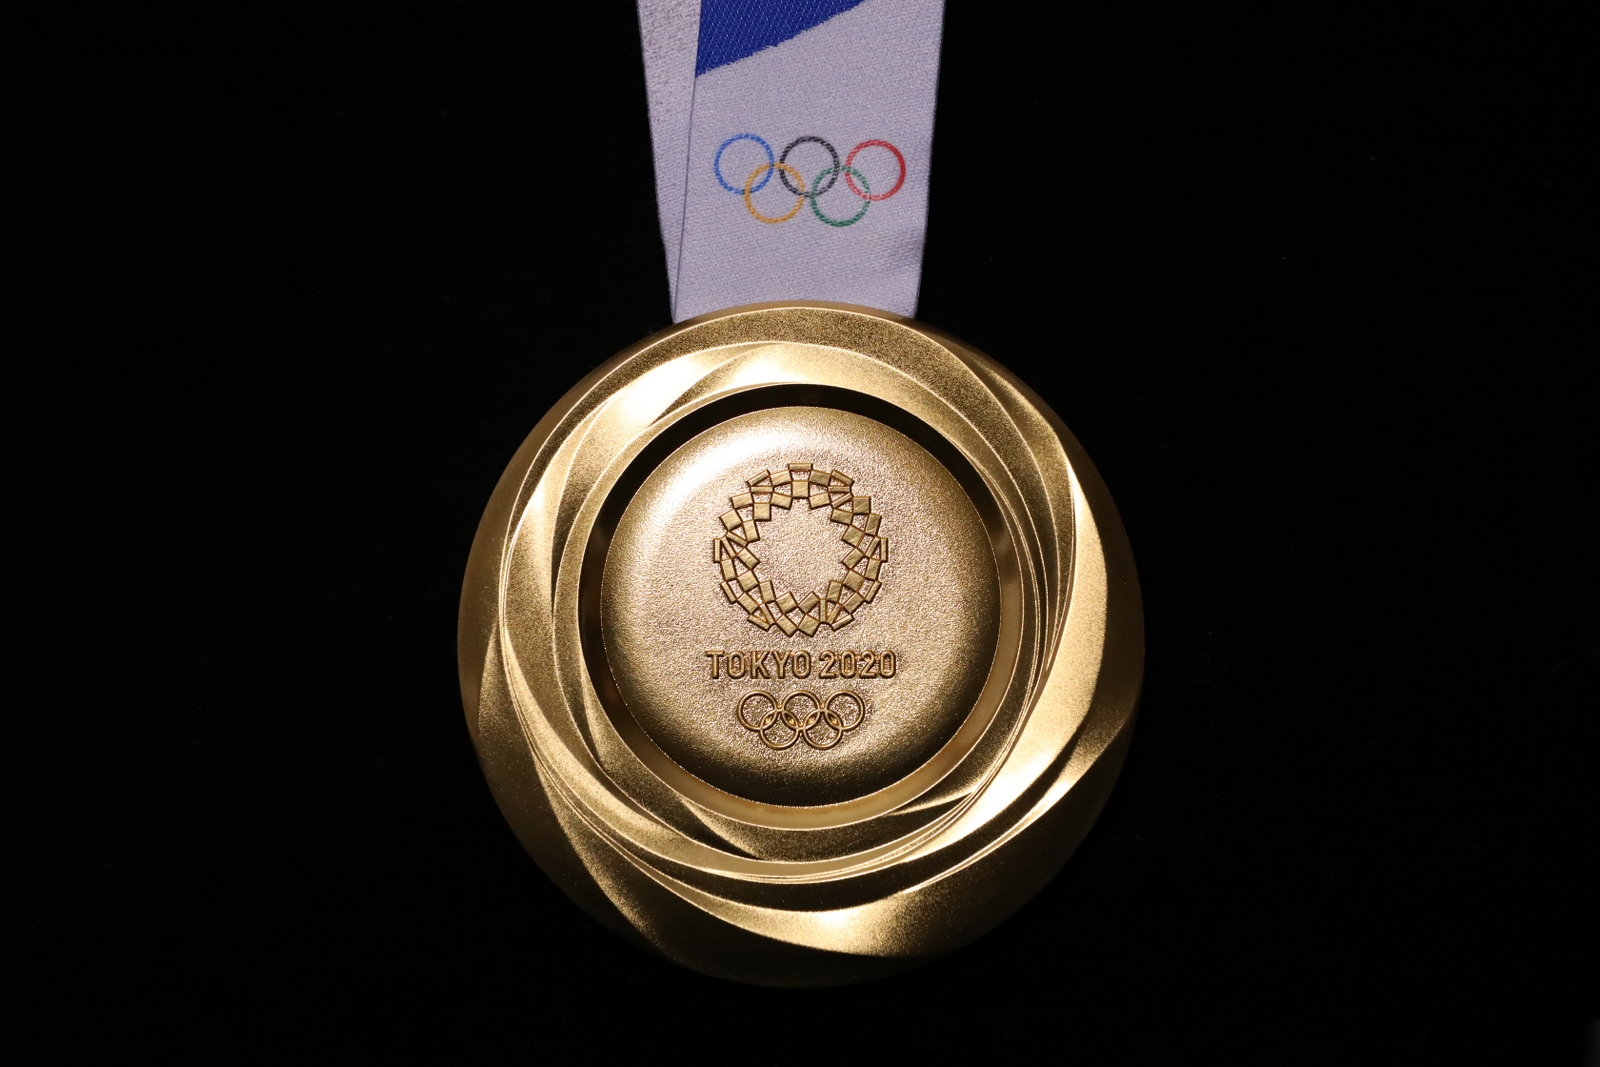 מדליית הזהב בטוקיו 2020